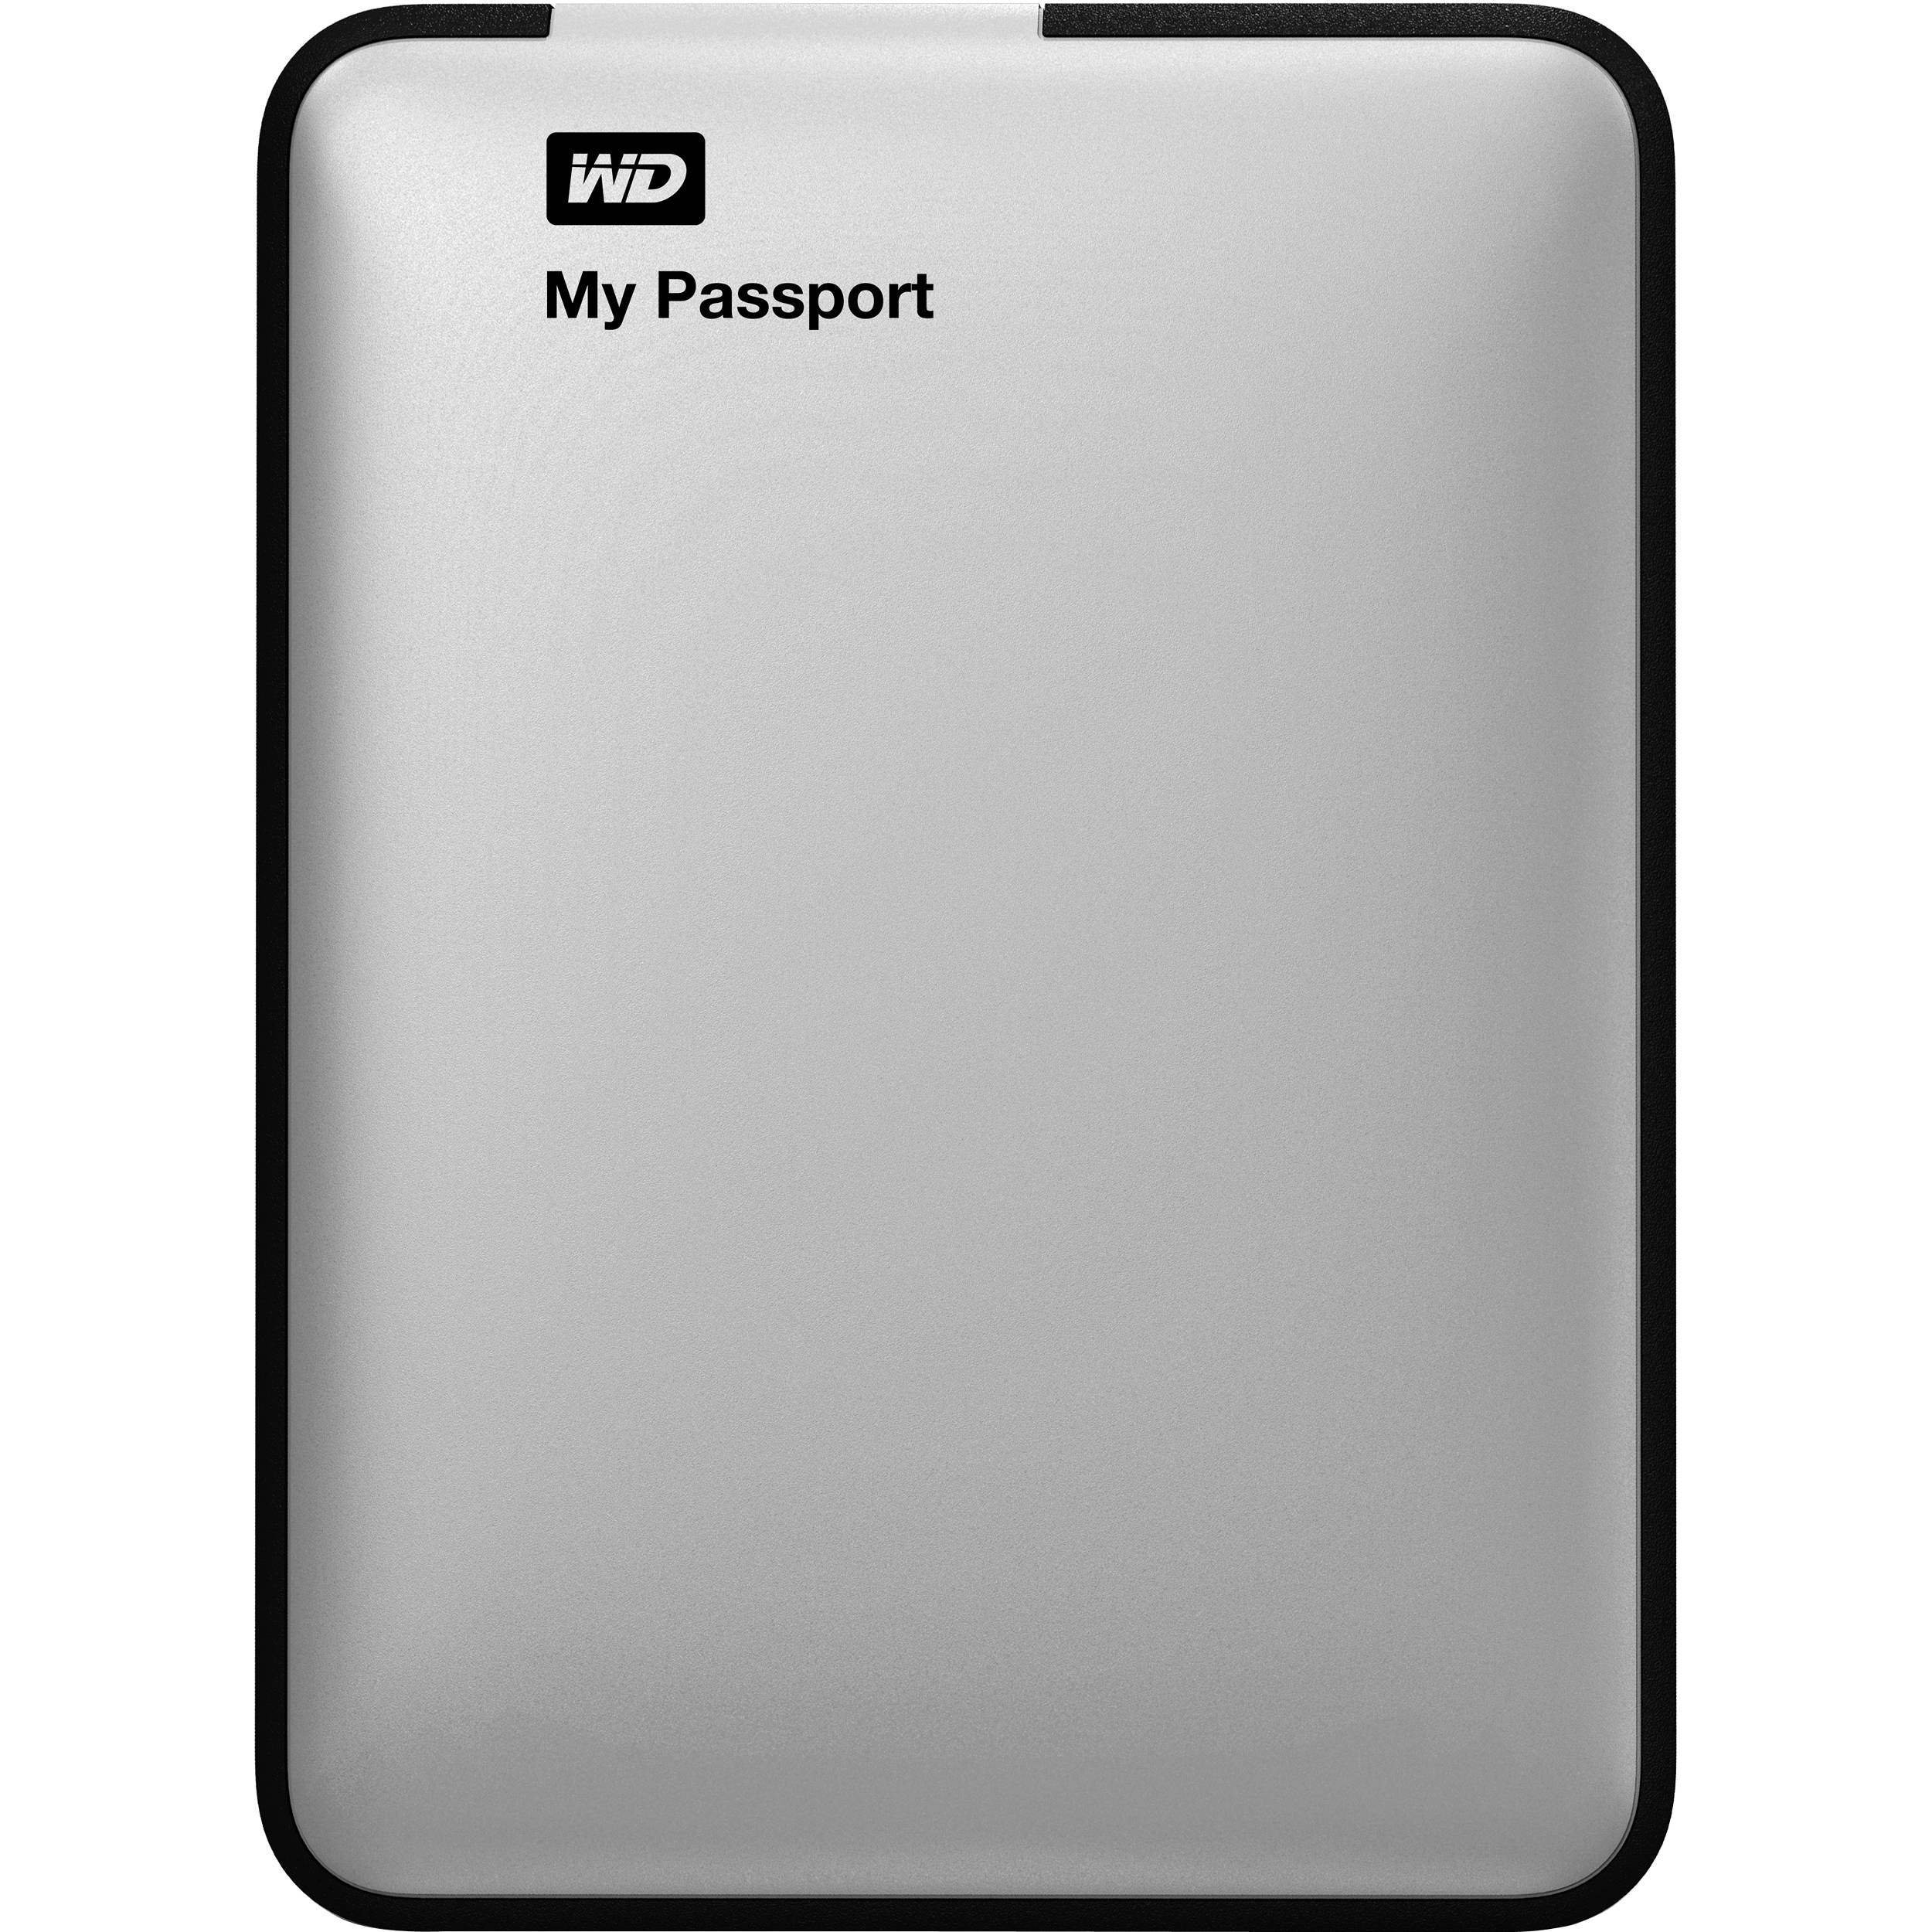 format a passport drive for mac